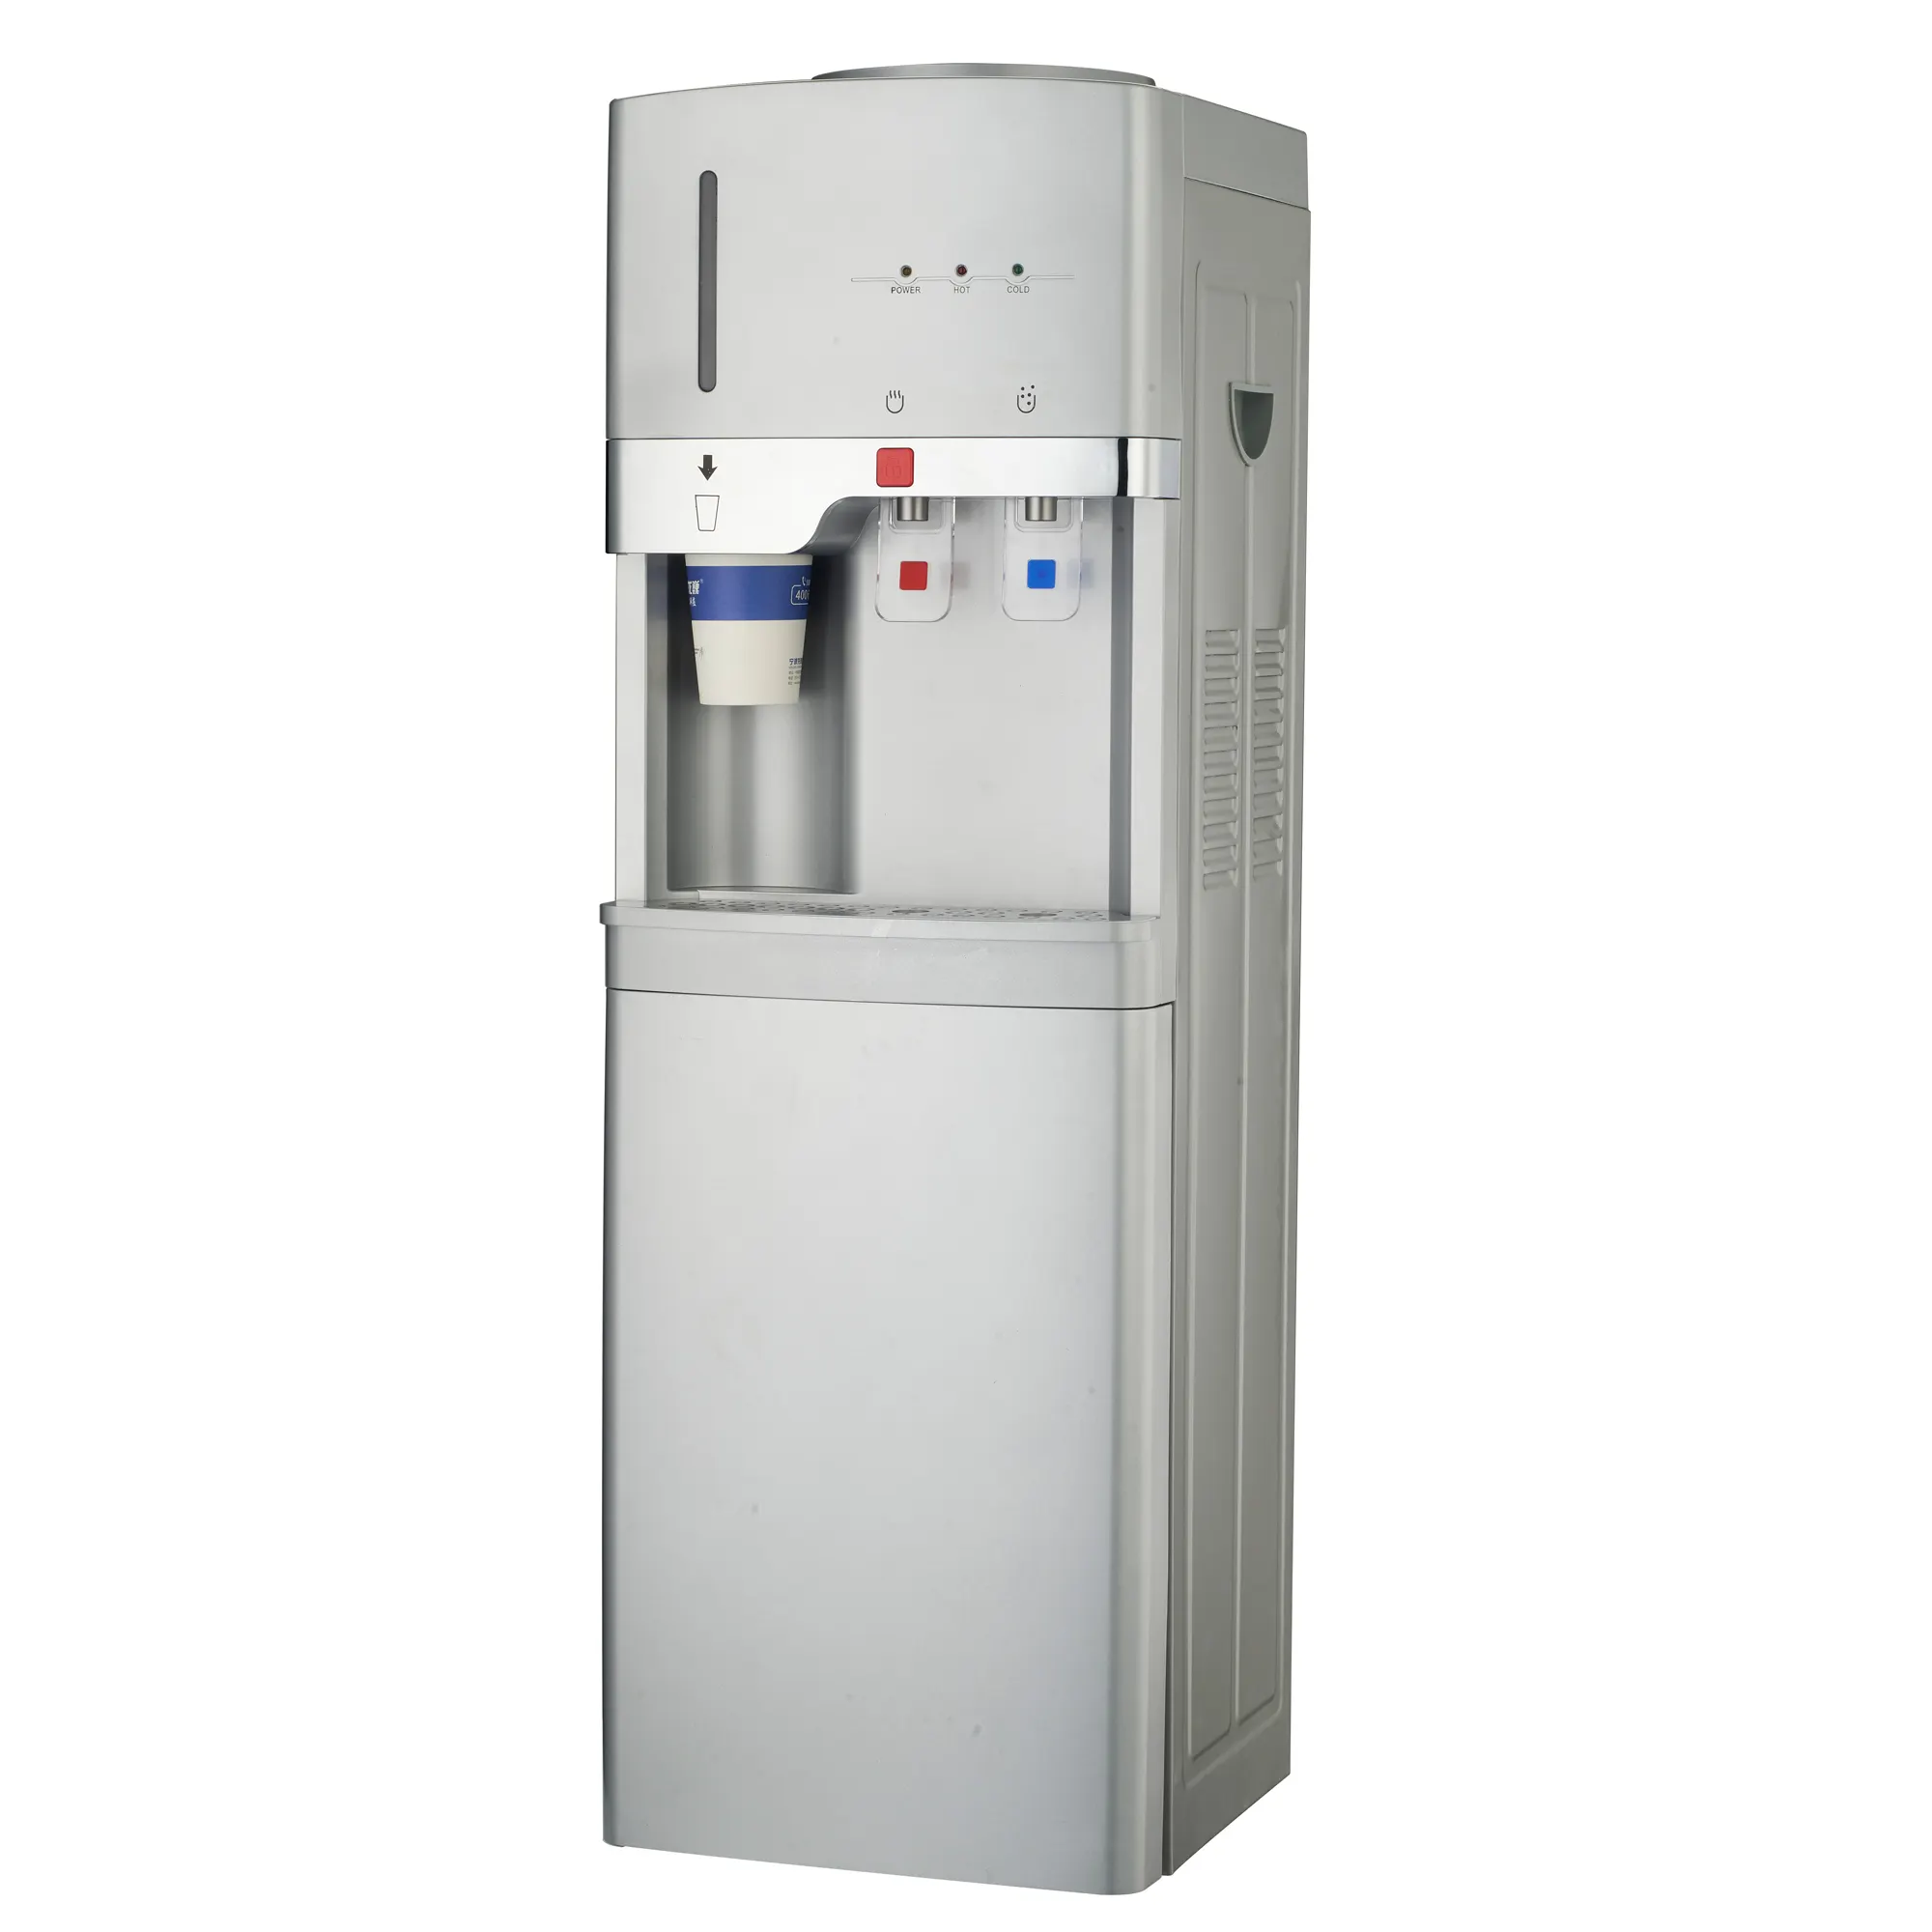 Pendingin air panas dan dingin berdiri di lantai, dengan dudukan gelas warna perak, kompresor dispenser air pendingin 5x95L dengan kulkas